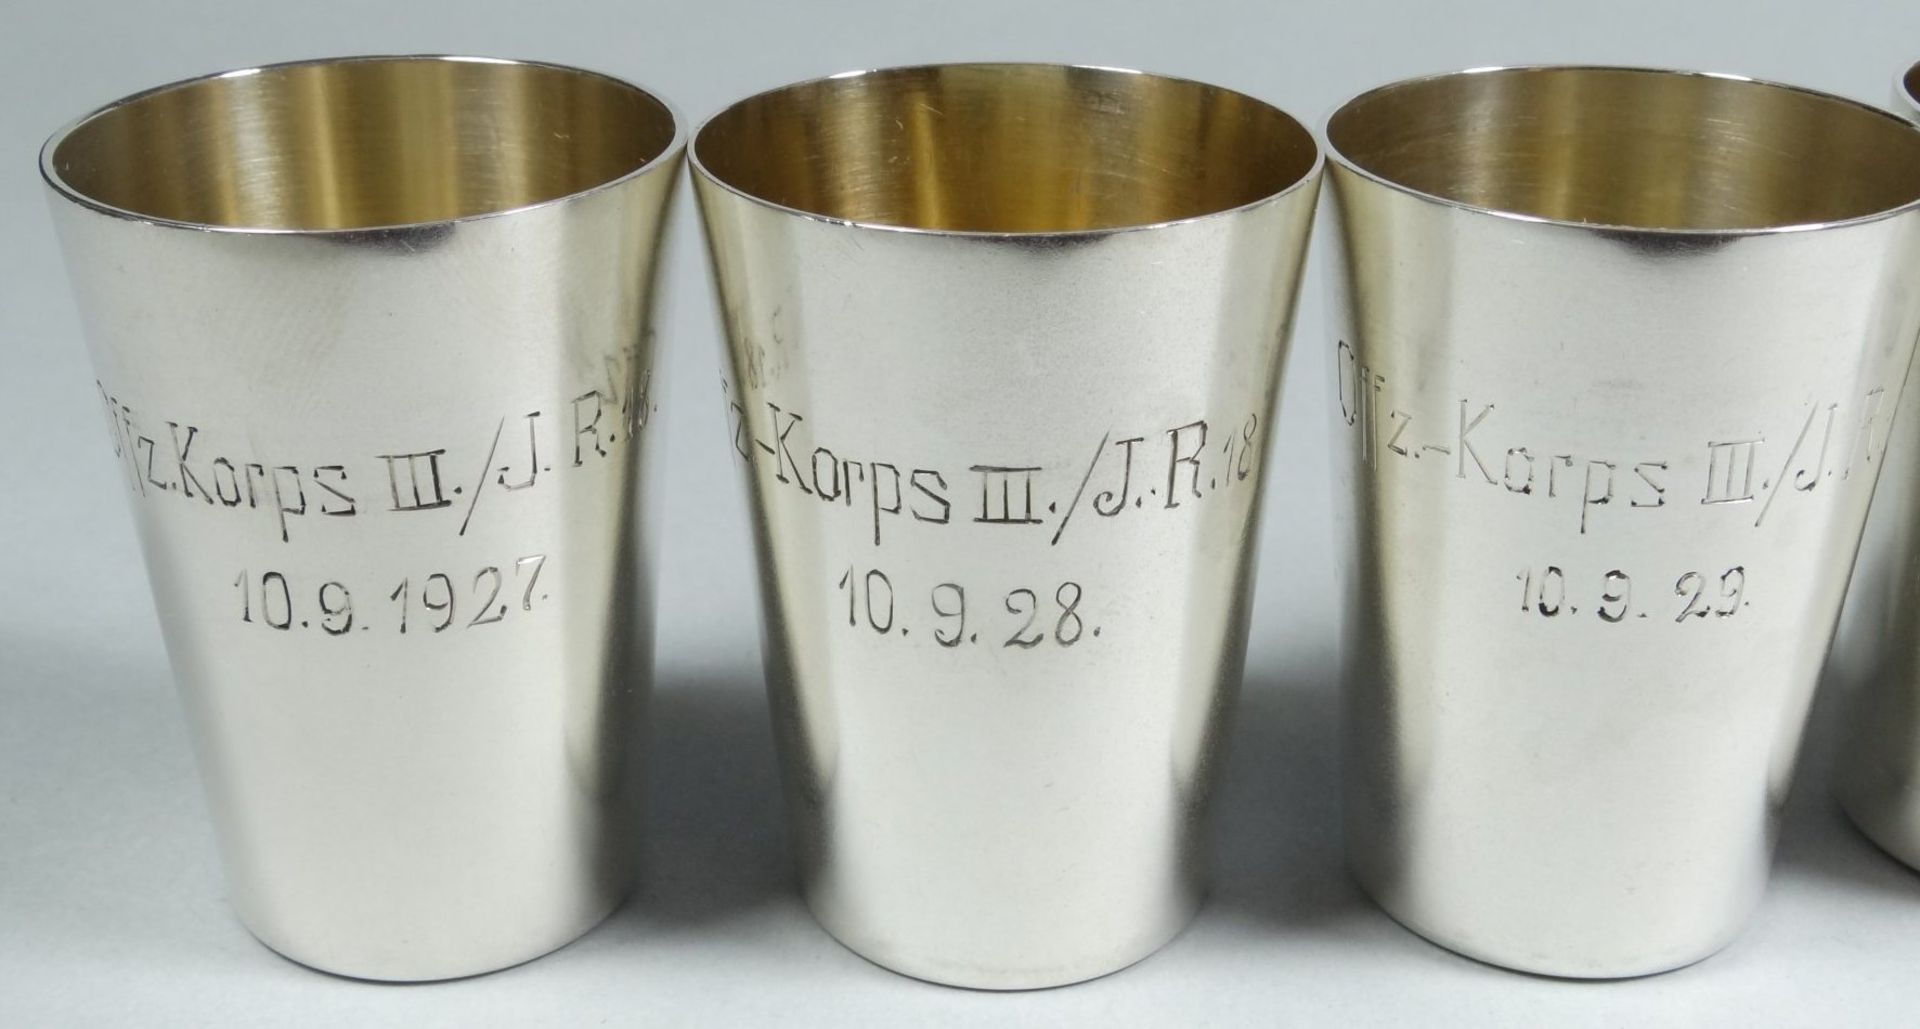 6x Silber-8-- Vodkabecher, Gravur Offz.Korps III/J.R. und Datum von 1927 bis 1932, H-4,5 cm, zus. - Bild 2 aus 7